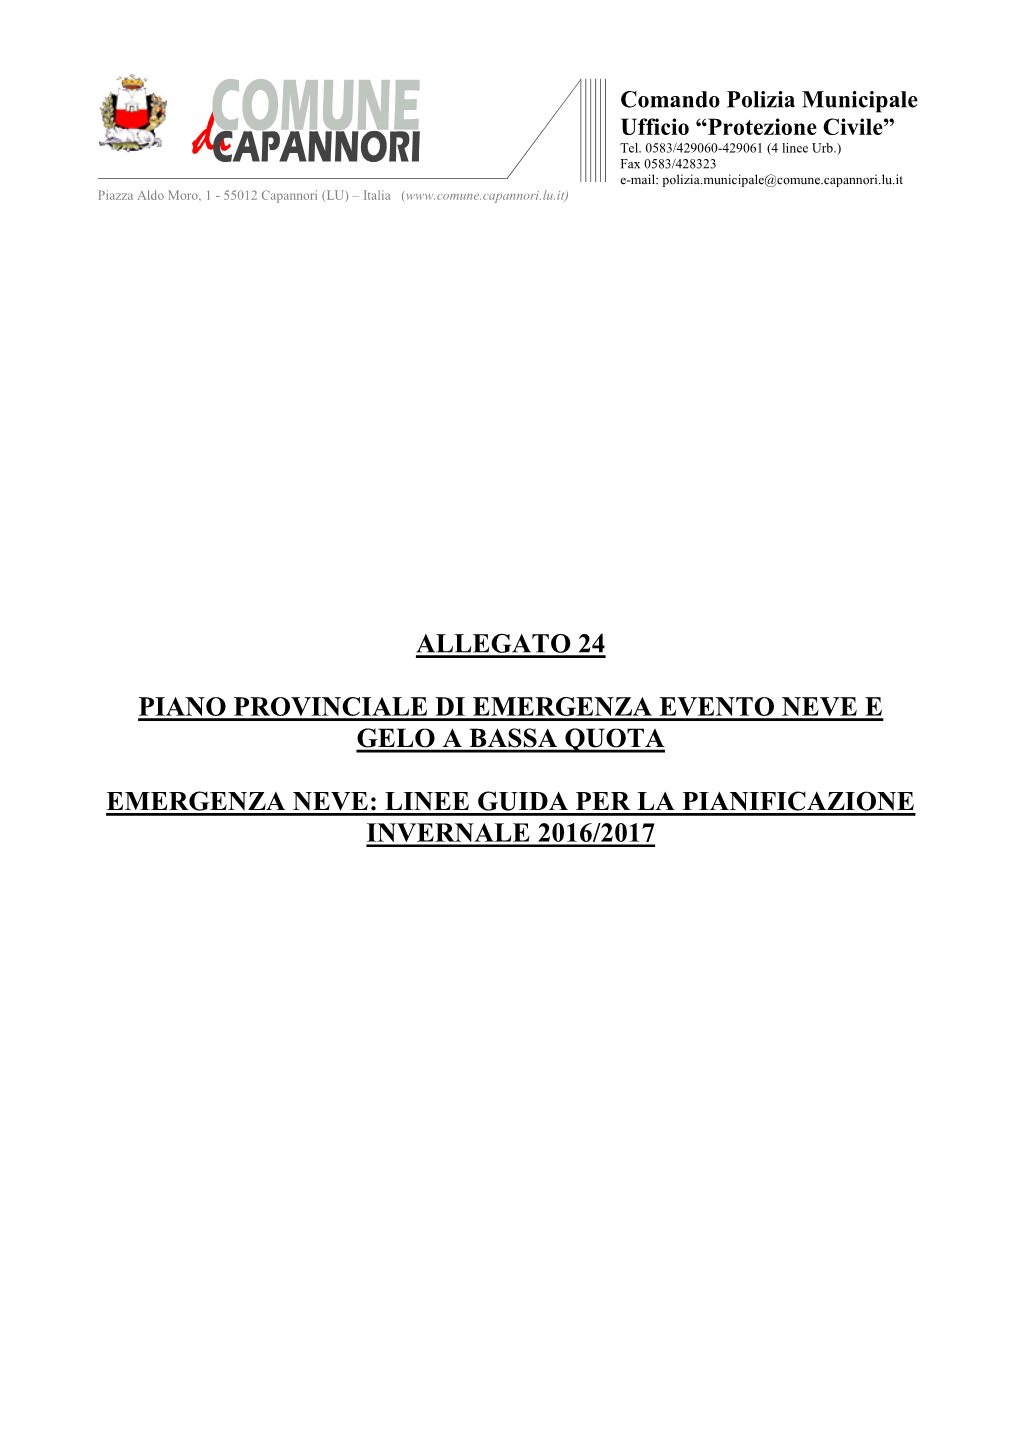 Allegato 24: Piano Provinciale Di Emergenza